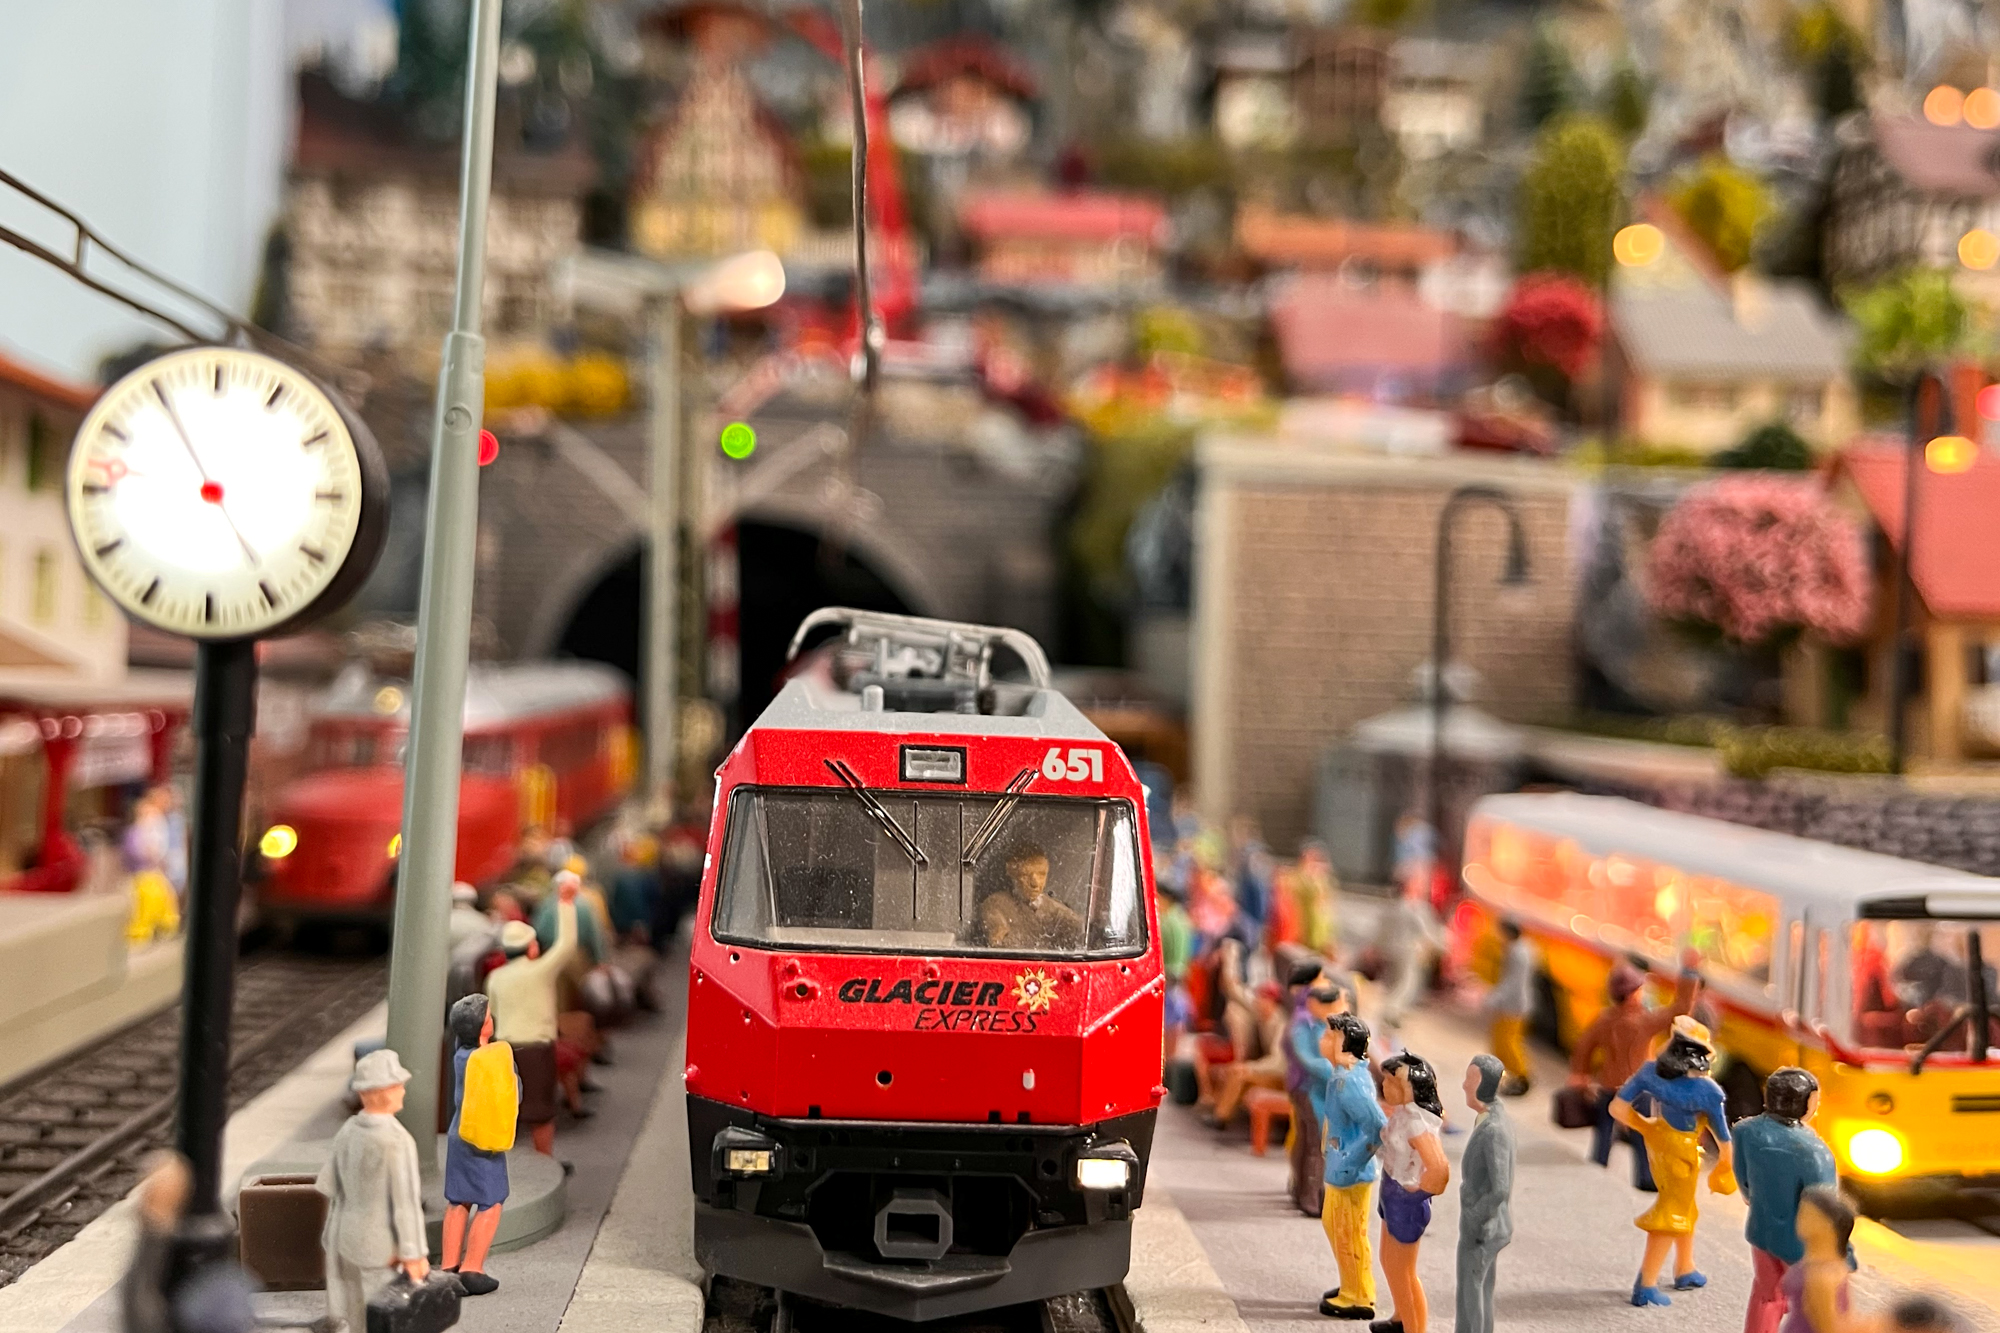 Modelleisenbahn von Klaus Theissen in St. Vith (Bild: Robin Emonts/BRF)